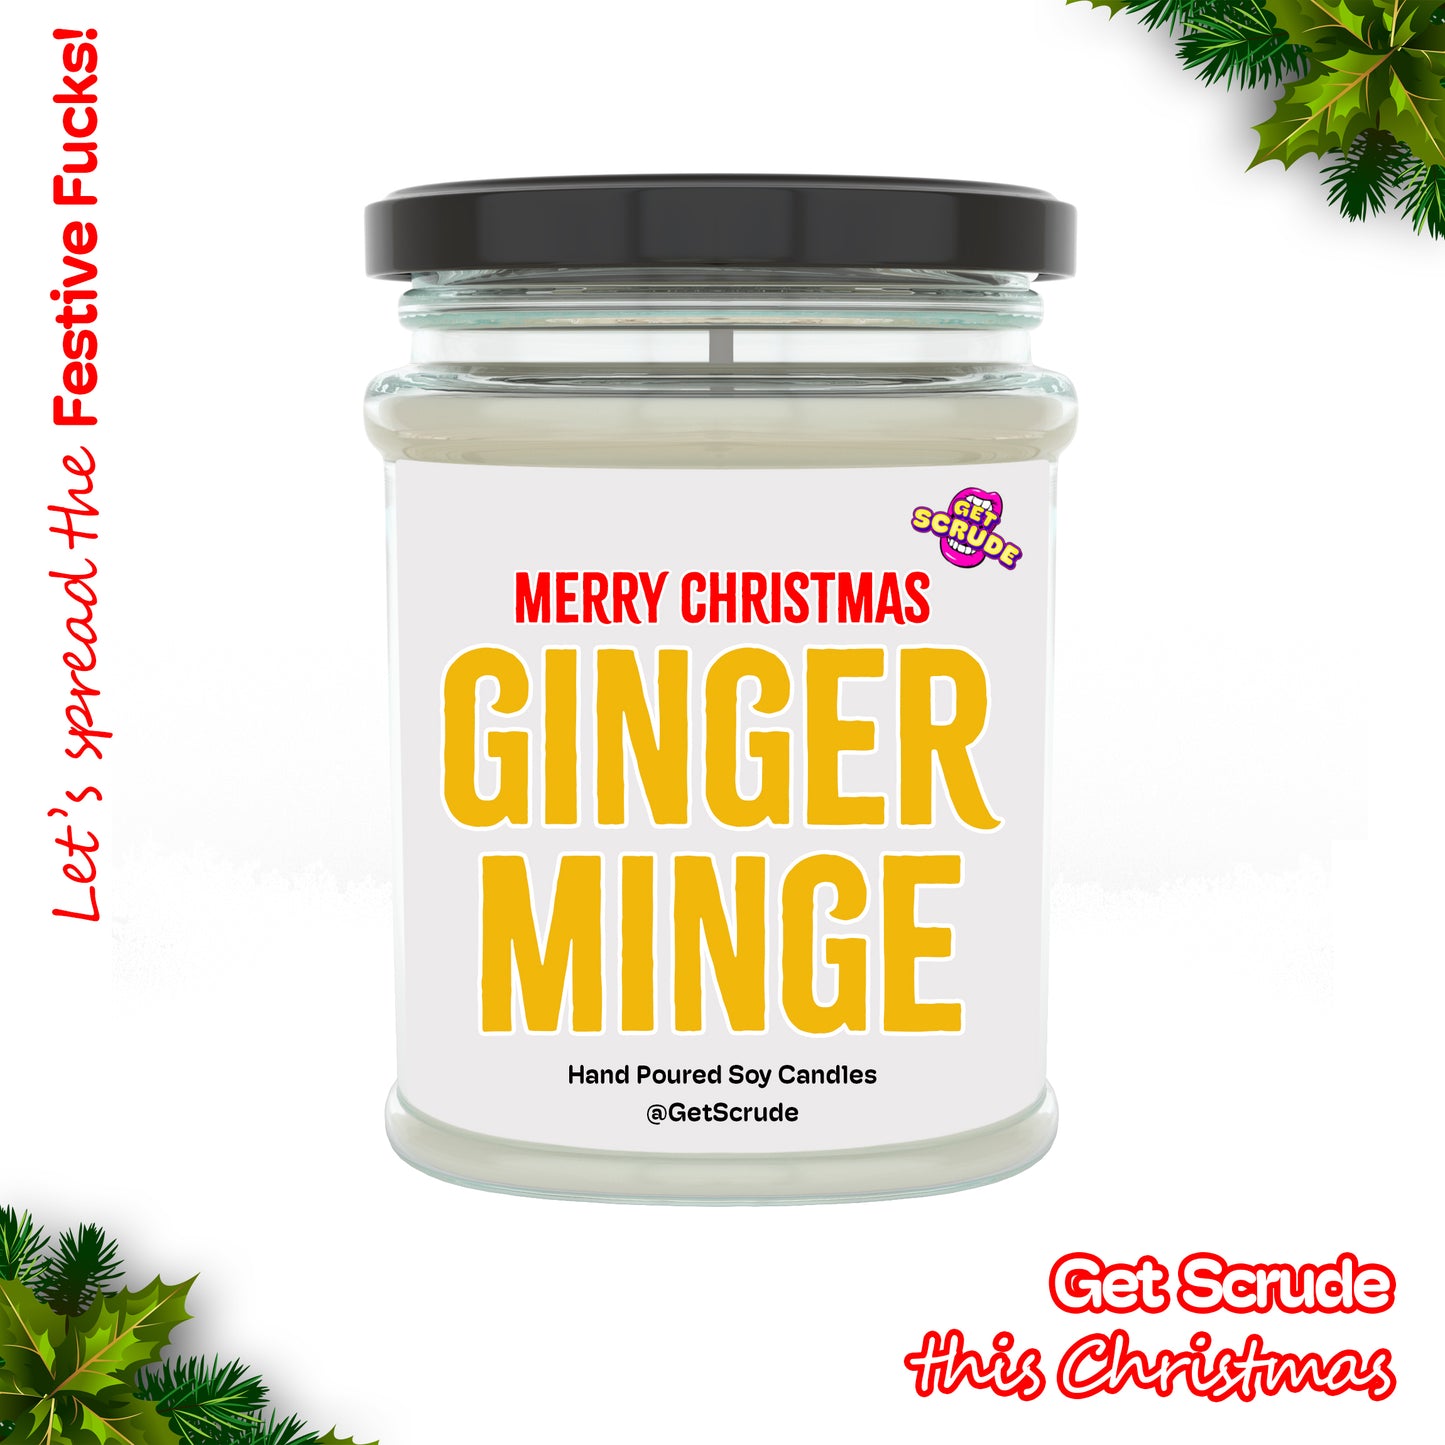 Merry Christmas Ginger Minge